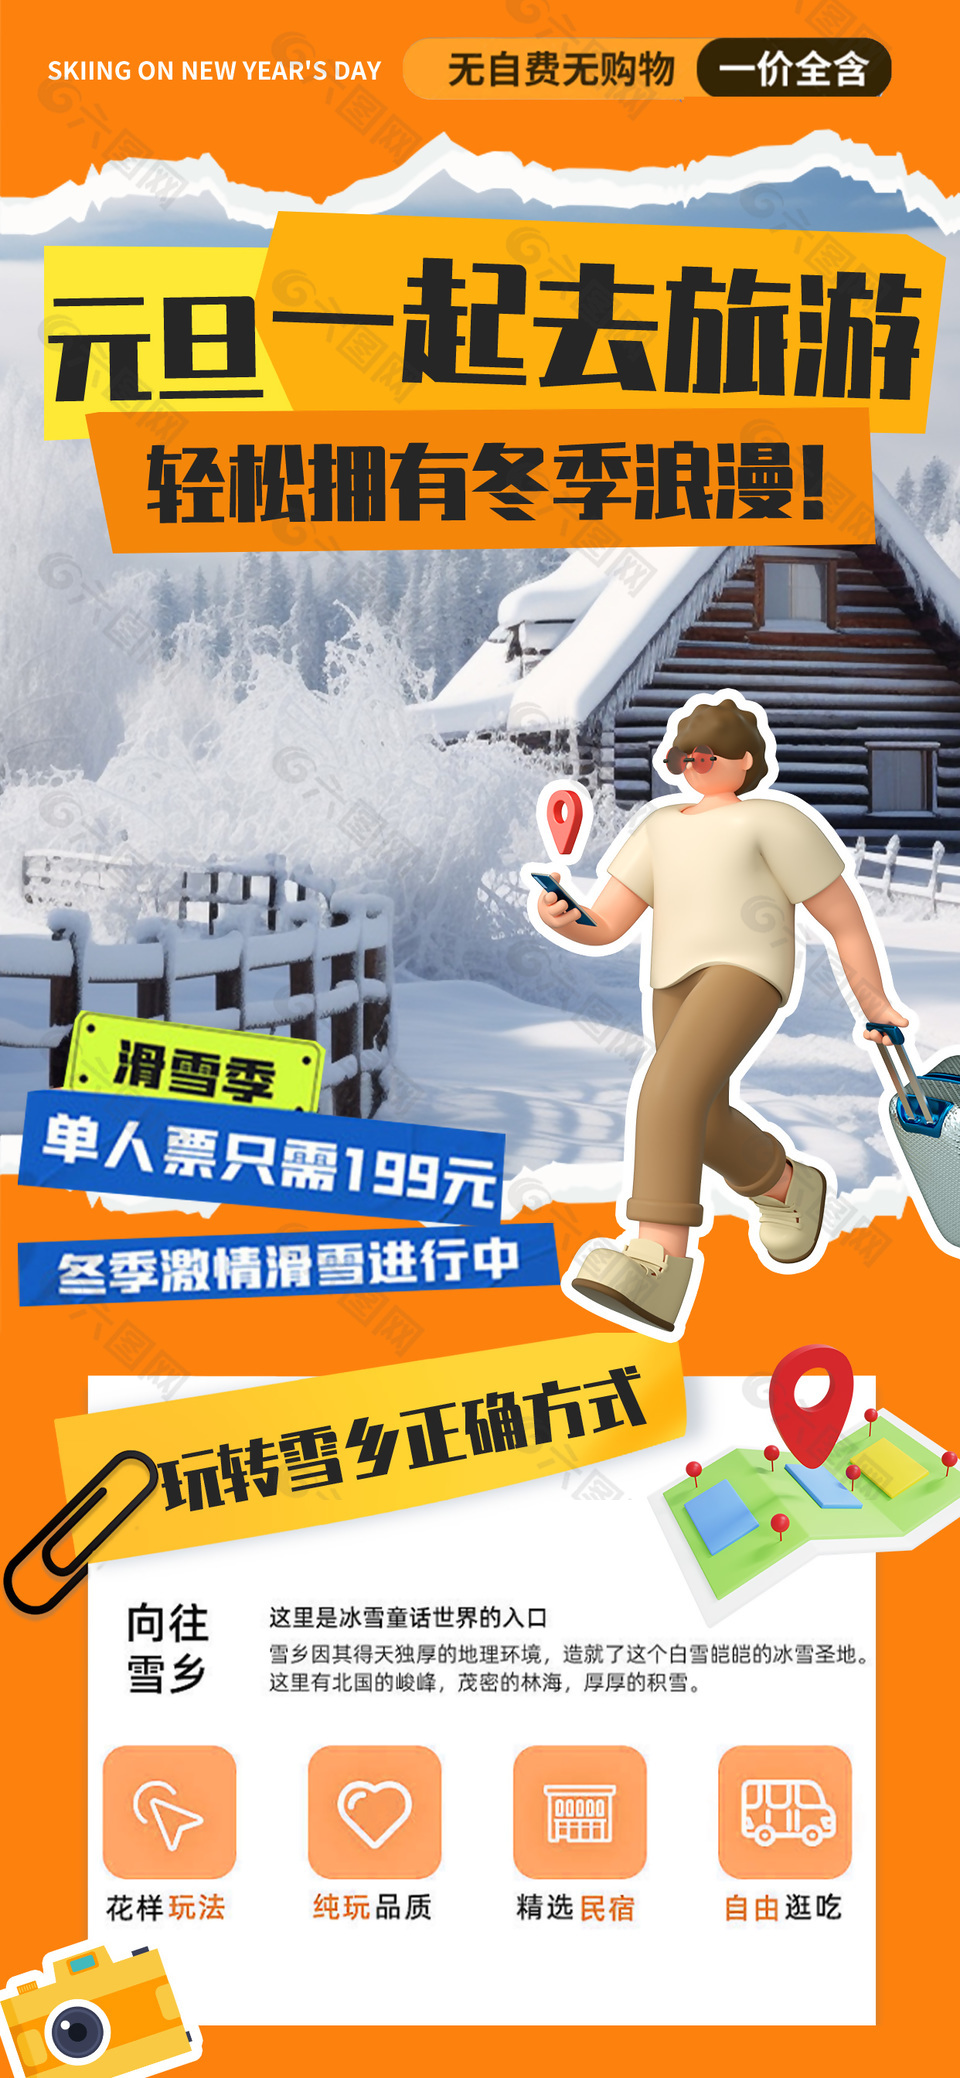 元旦旅游玩转雪乡3d人物元素手机海报